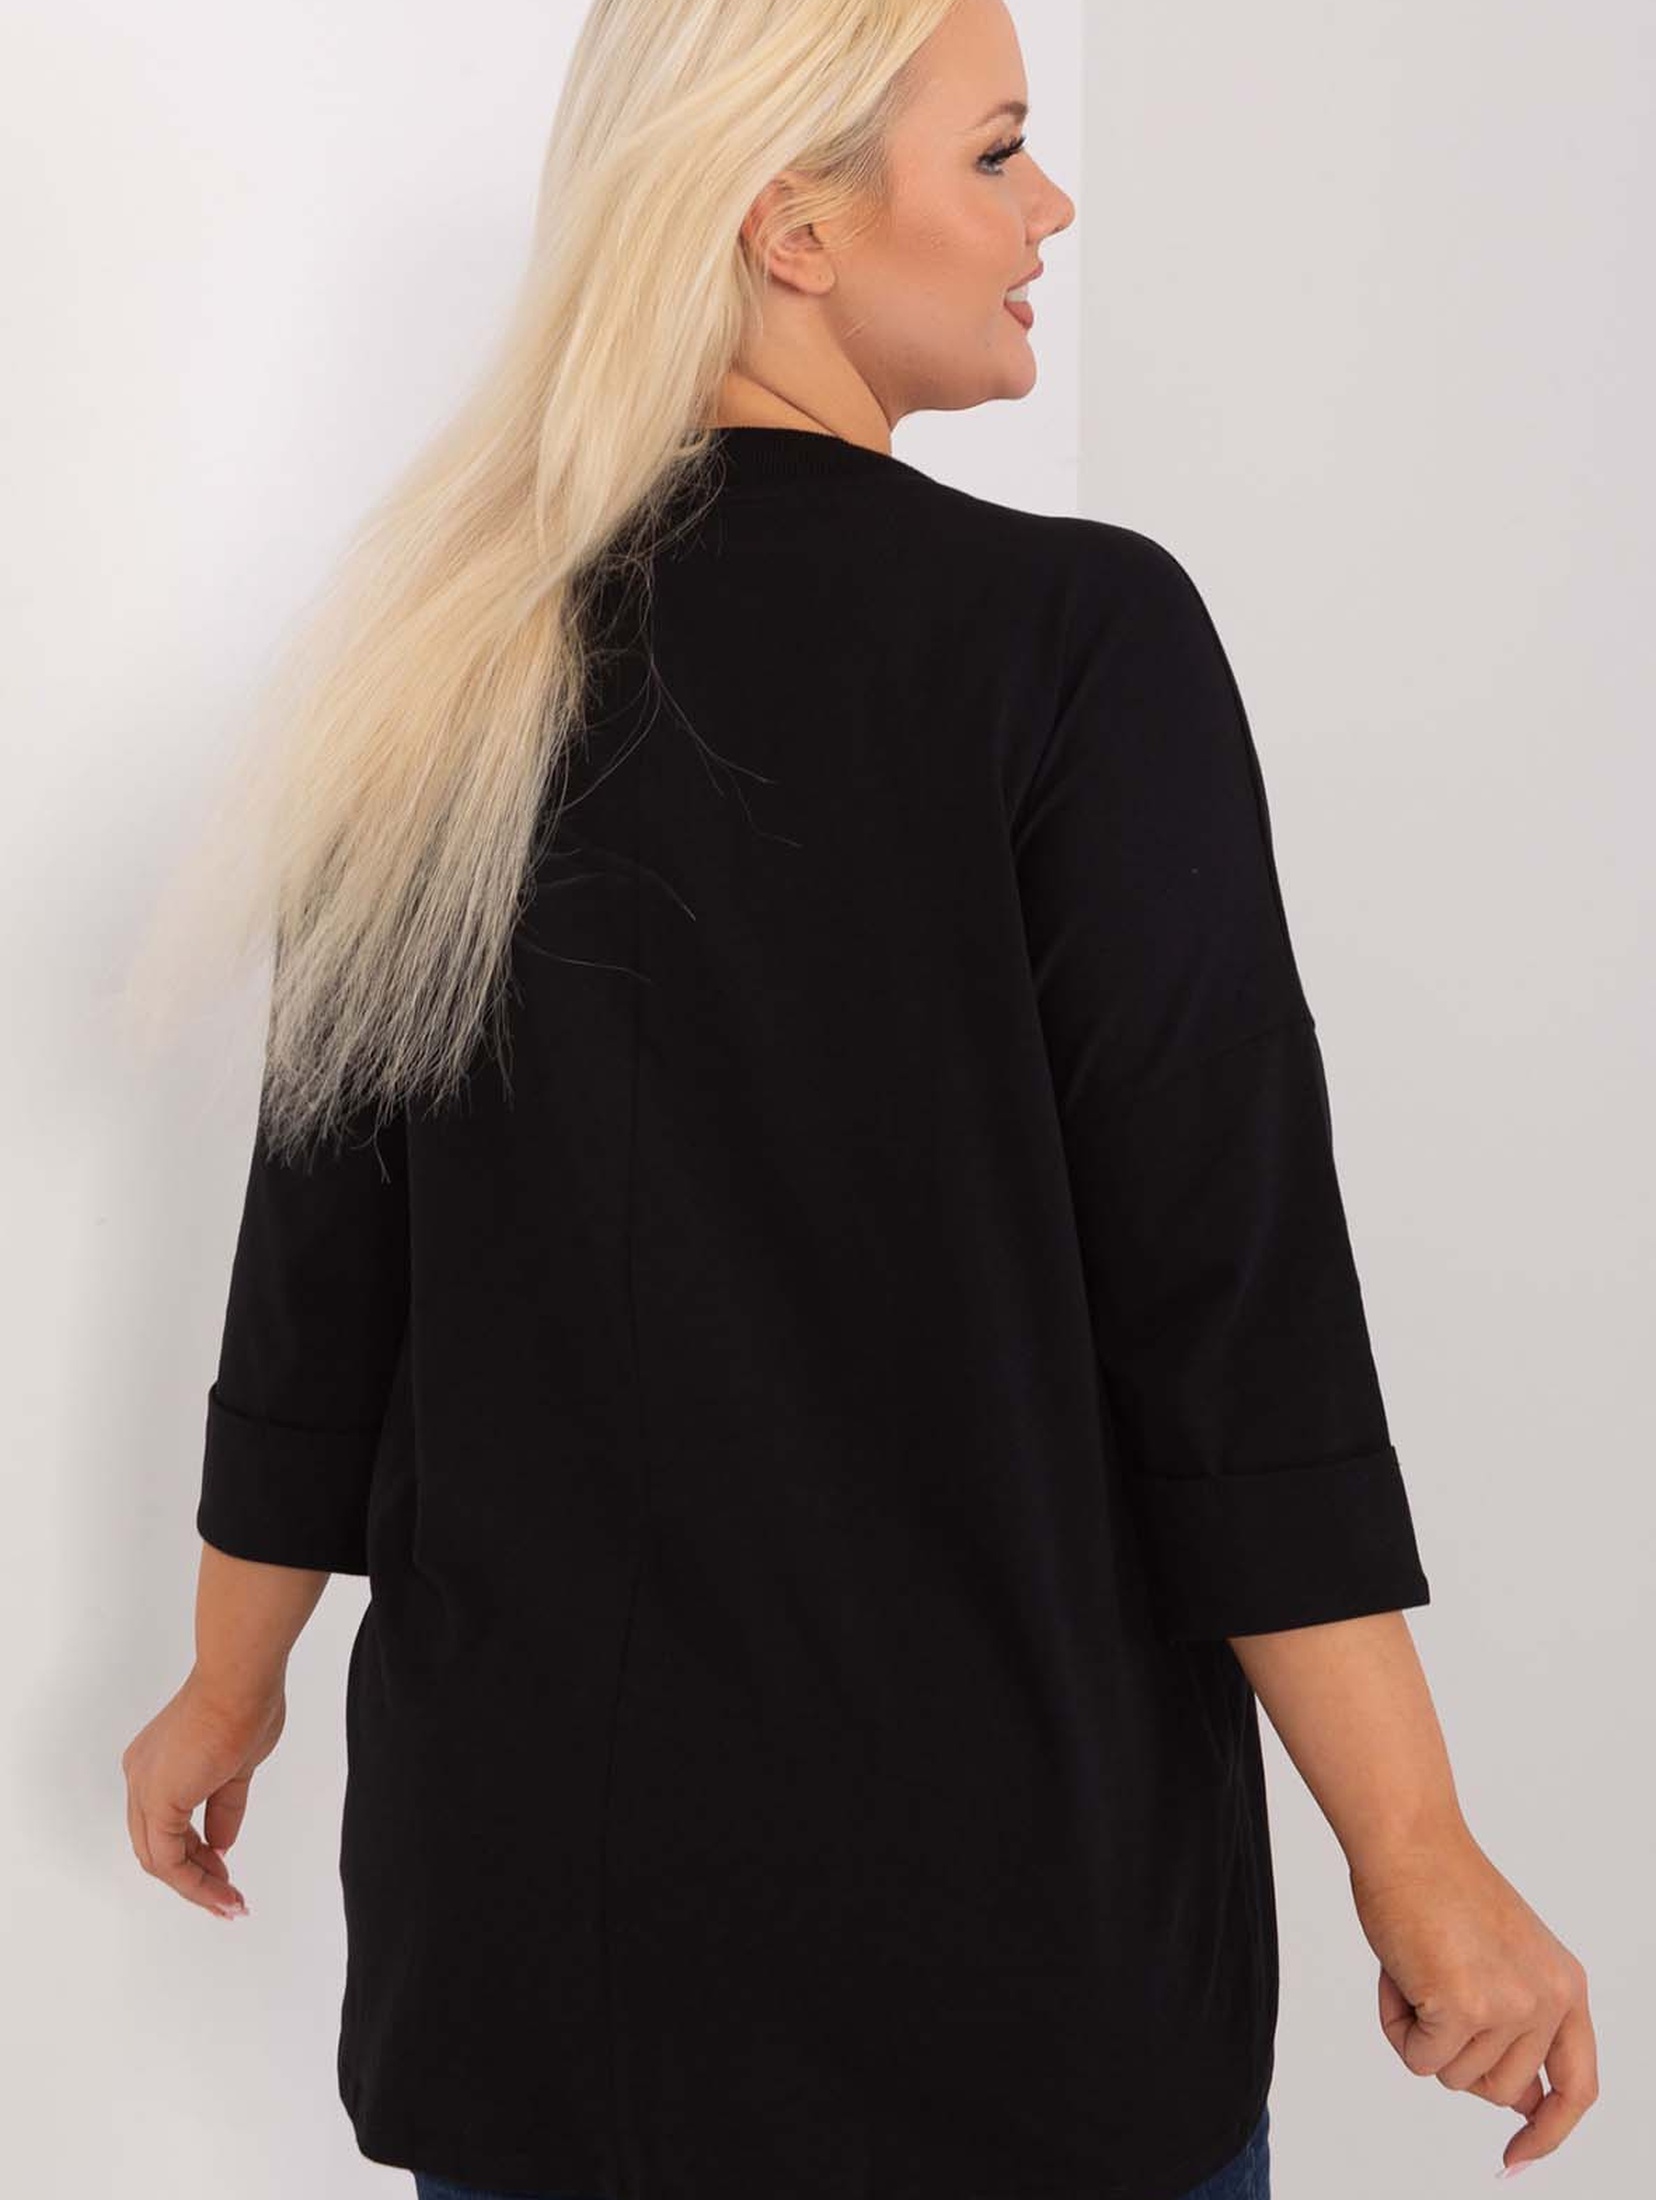 Czarna asymetryczna bluzka damska plus size z bawełny